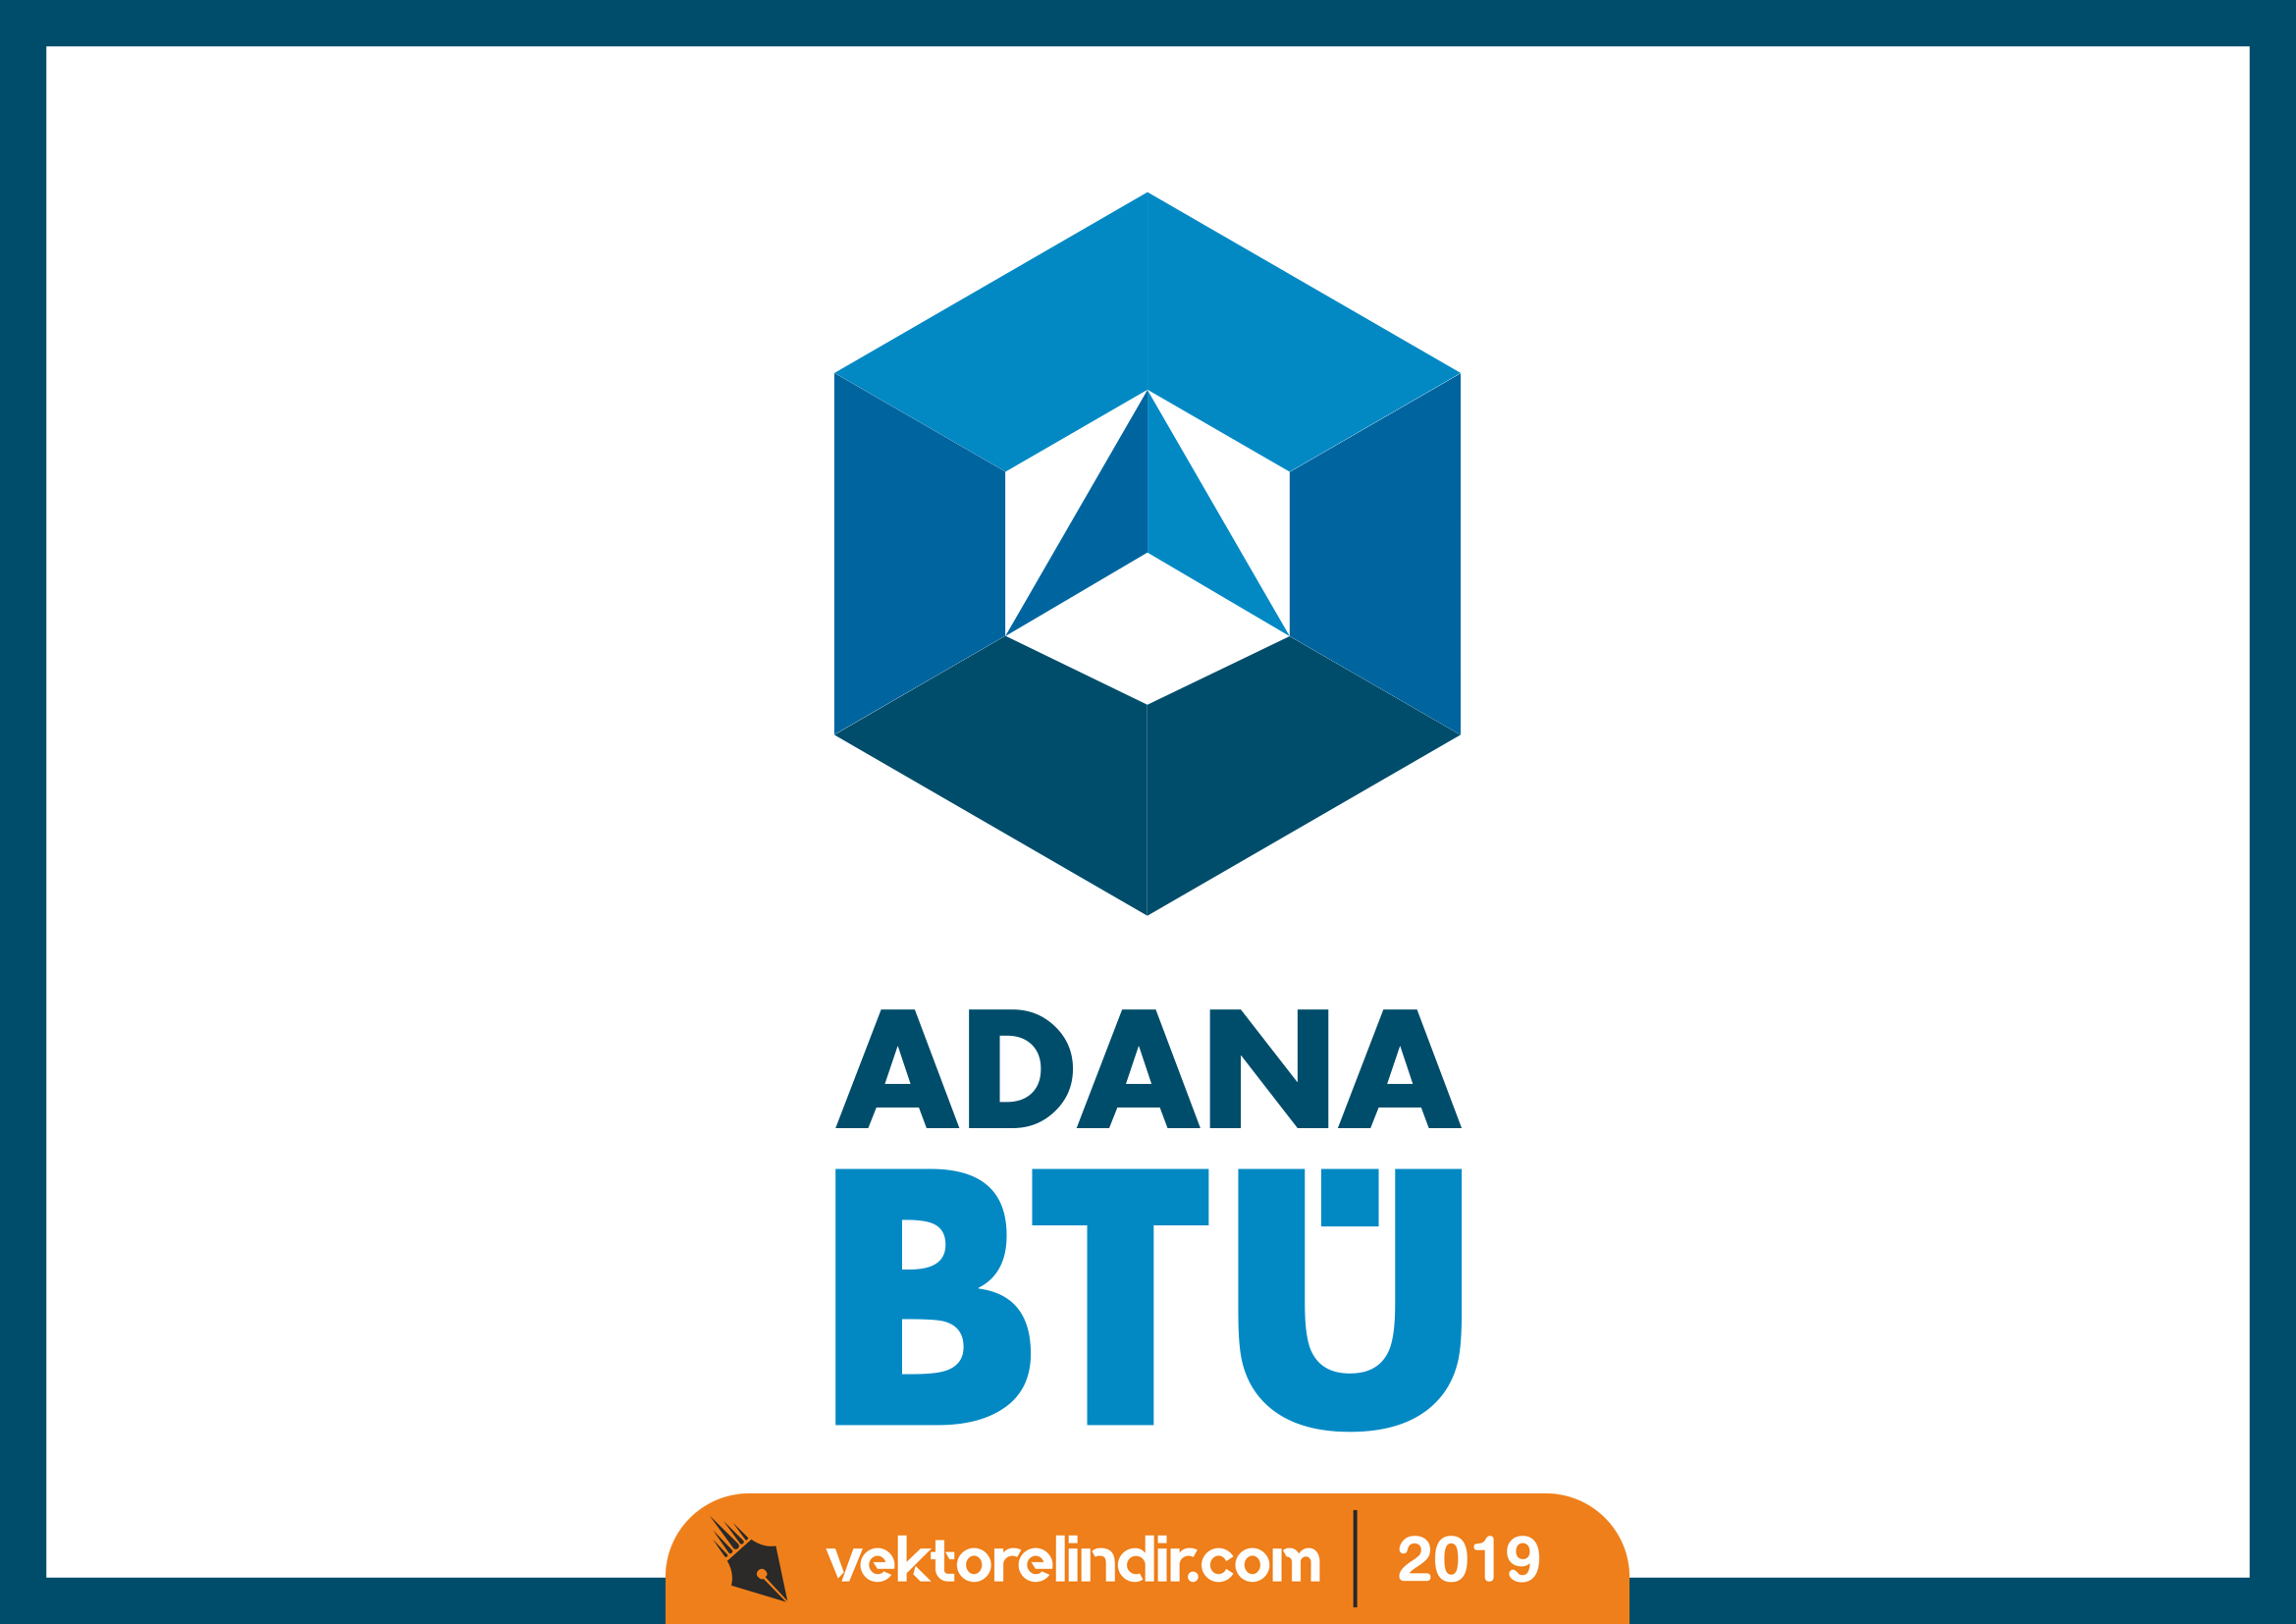 Adana Btü, Adana Bilim ve Teknoloji Üniversitesi Logo, Amblem